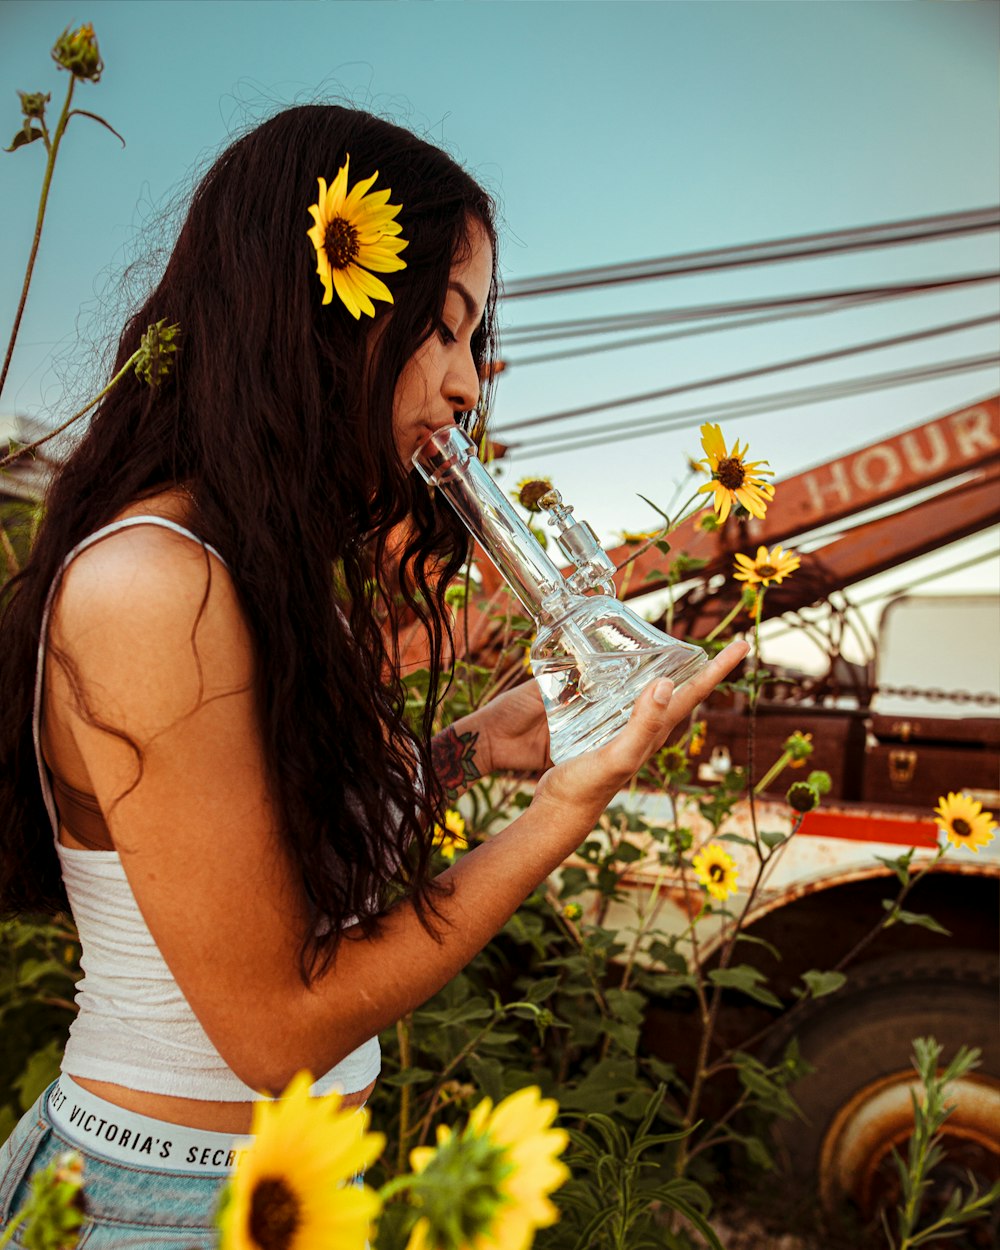 Frau hält Wasserbong aus Glas, während sie in der Nähe der gelben Sonnenblume steht